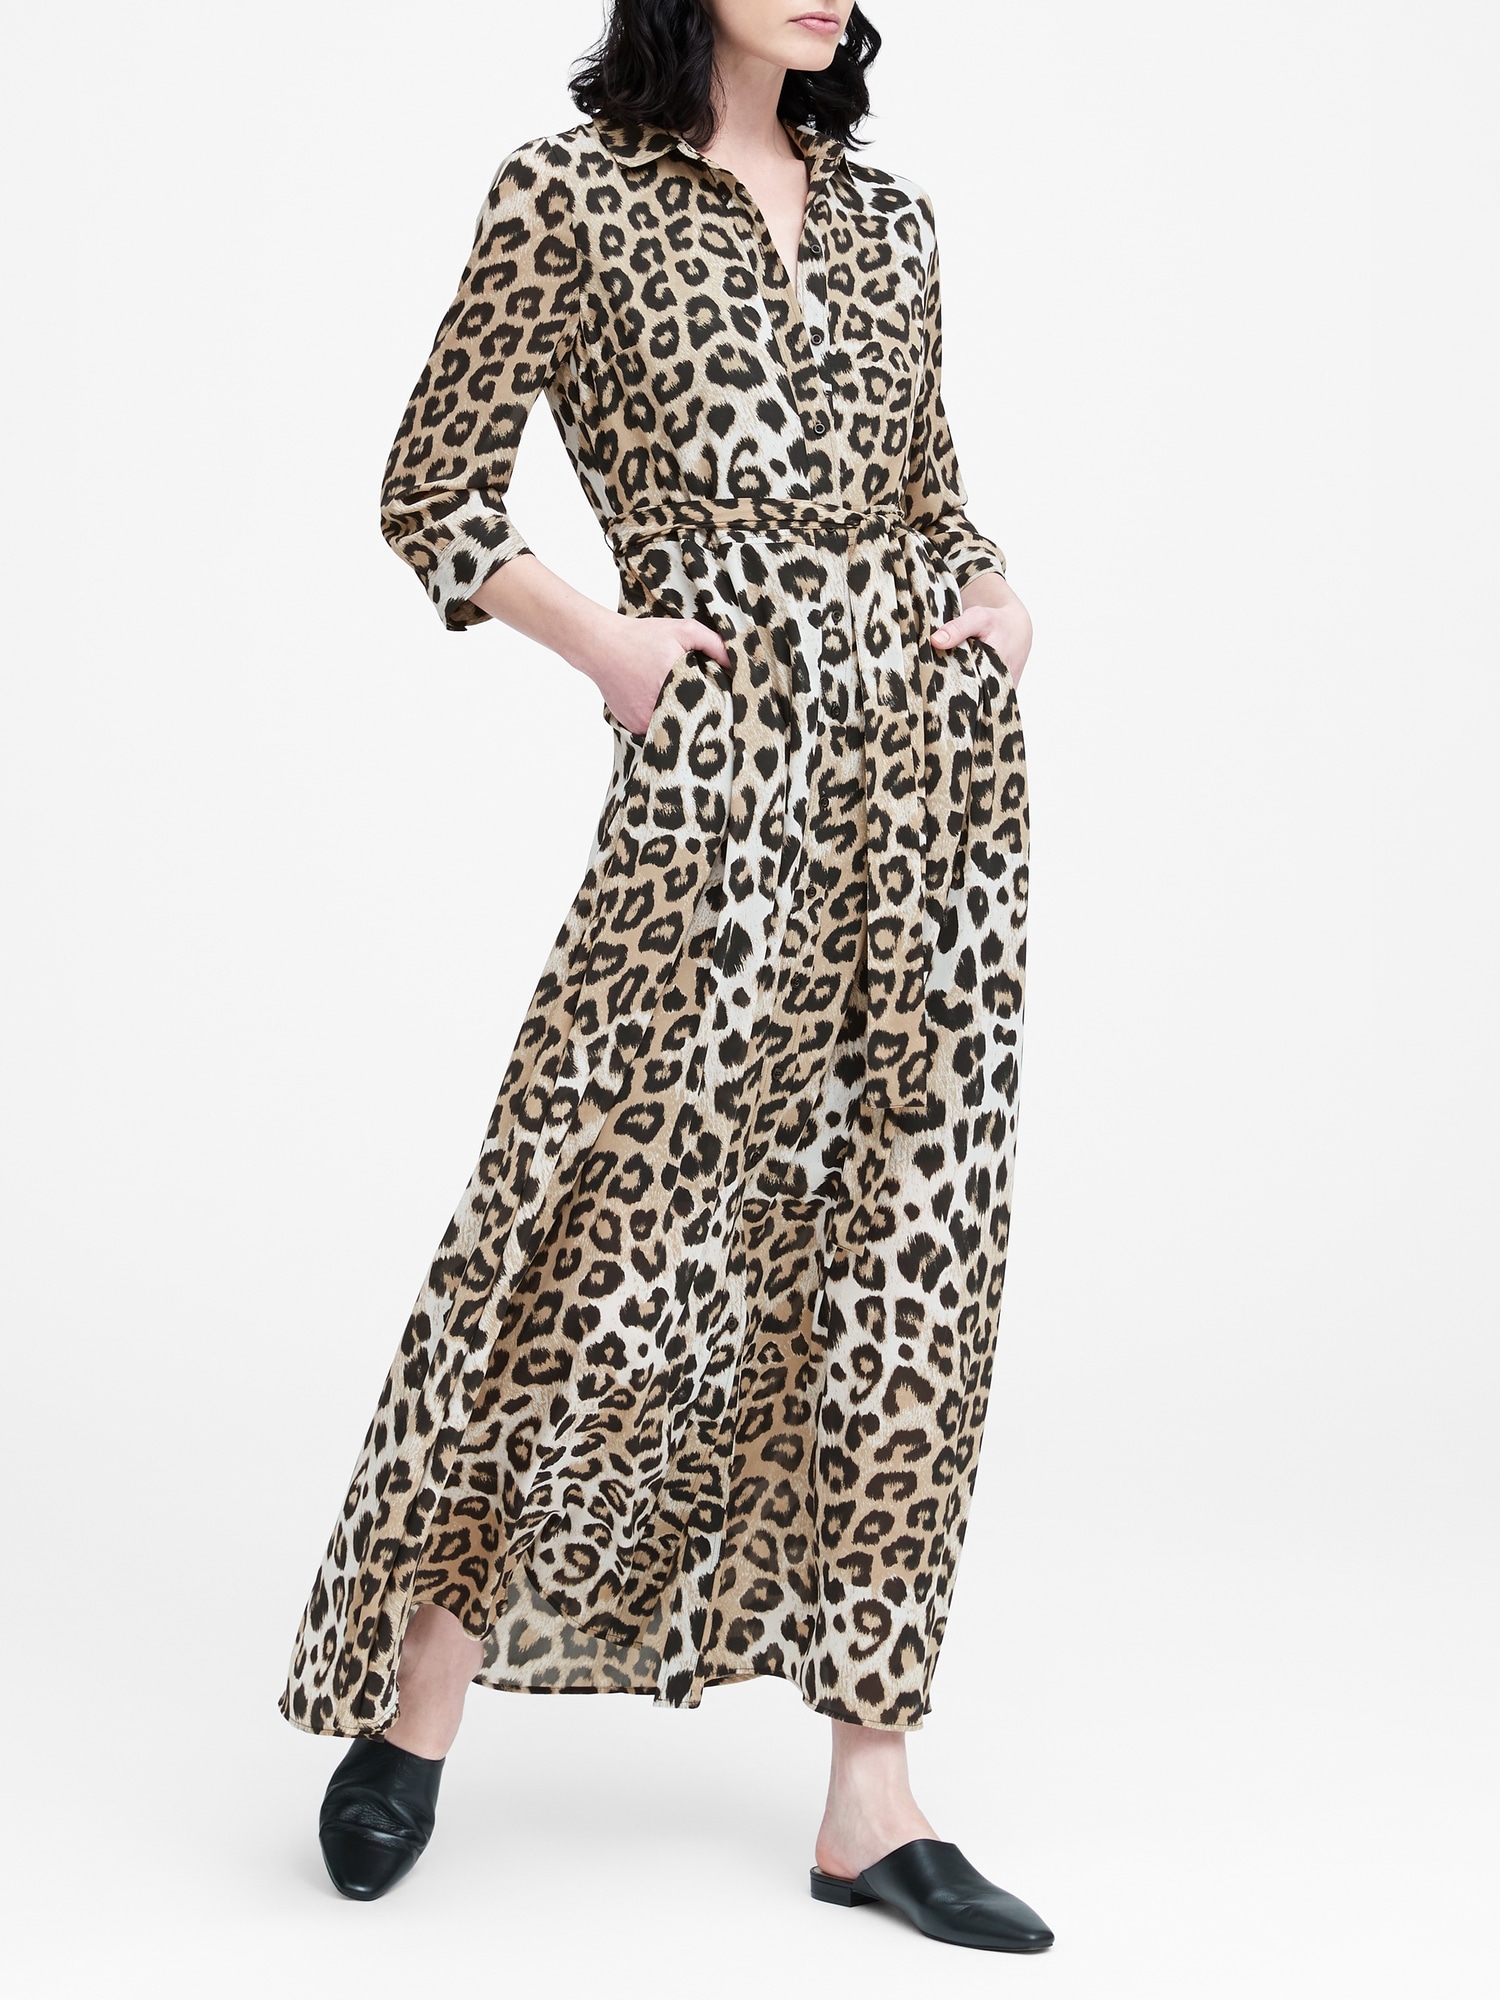 Leopard Print Maxi Shirtdress